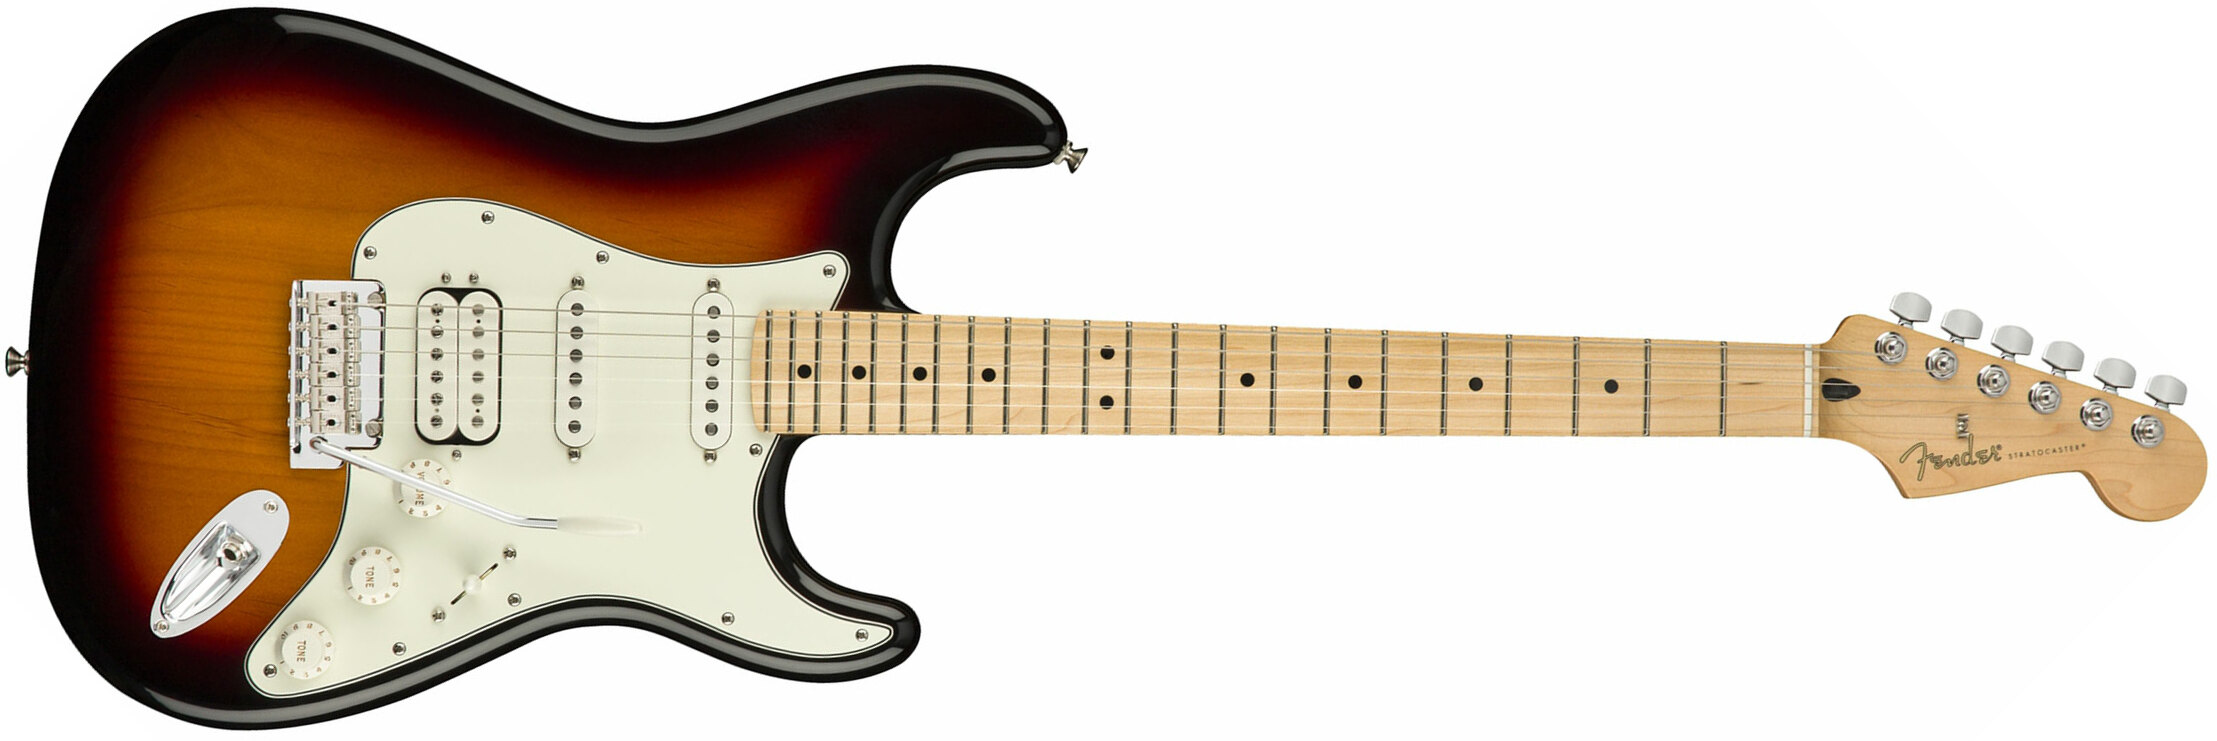 Fender Strat Player Mex Hss Mn - 3-color Sunburst - Elektrische gitaar in Str-vorm - Main picture